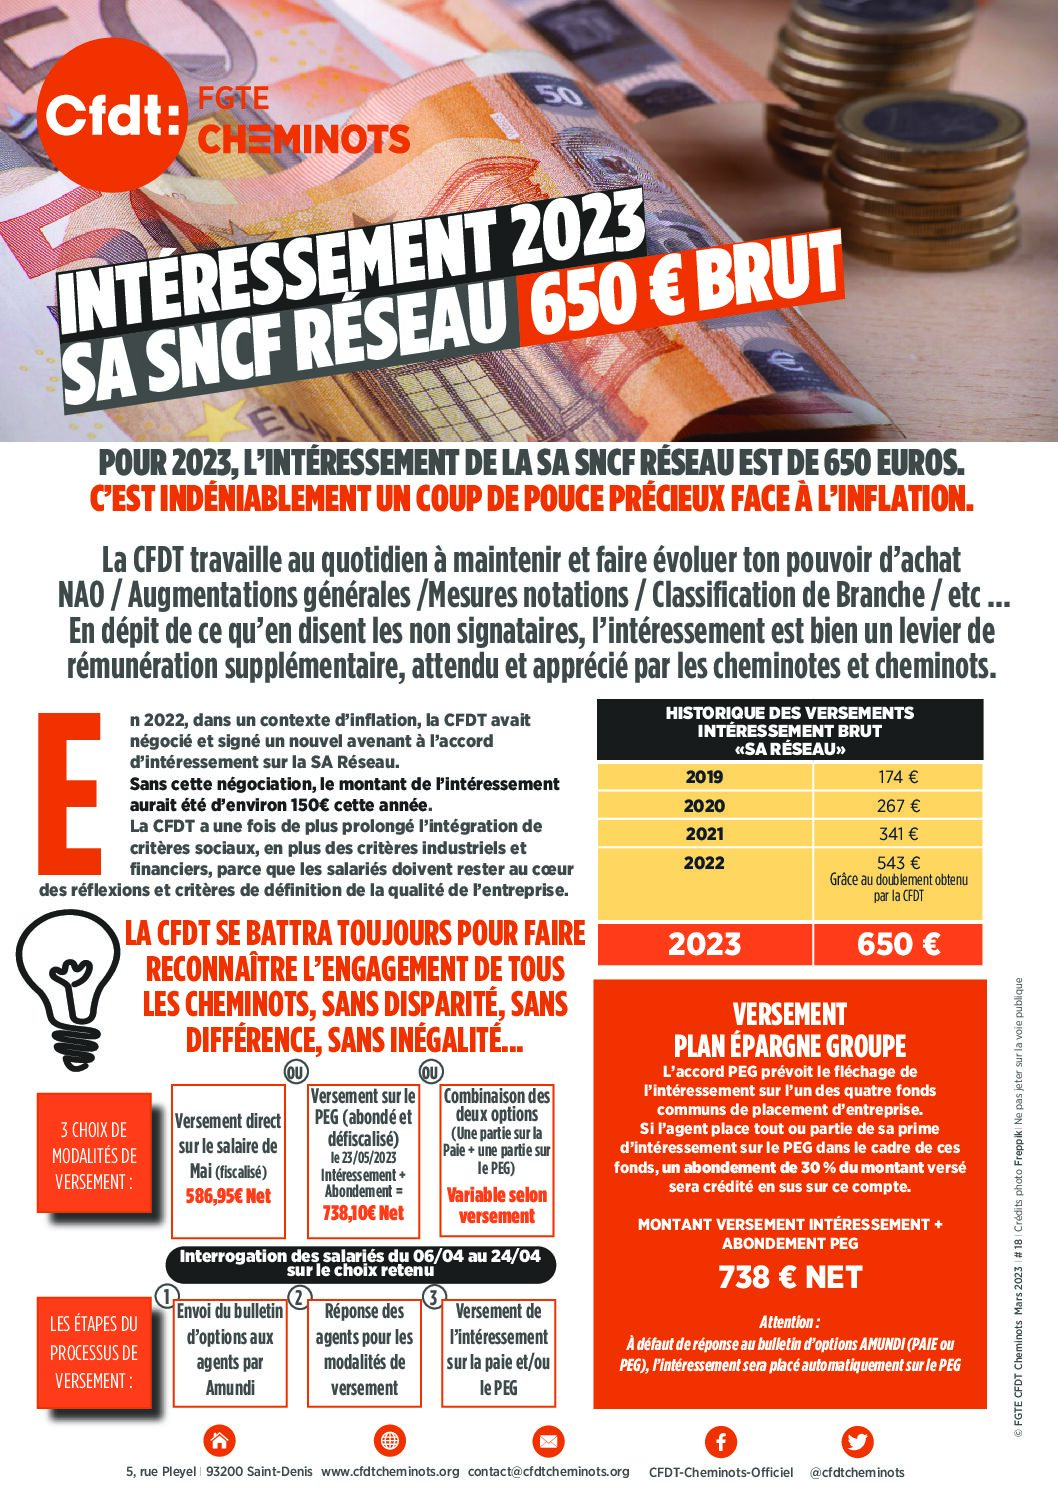 Reseau-07-2023-Interessement-SA-SNCF-Res